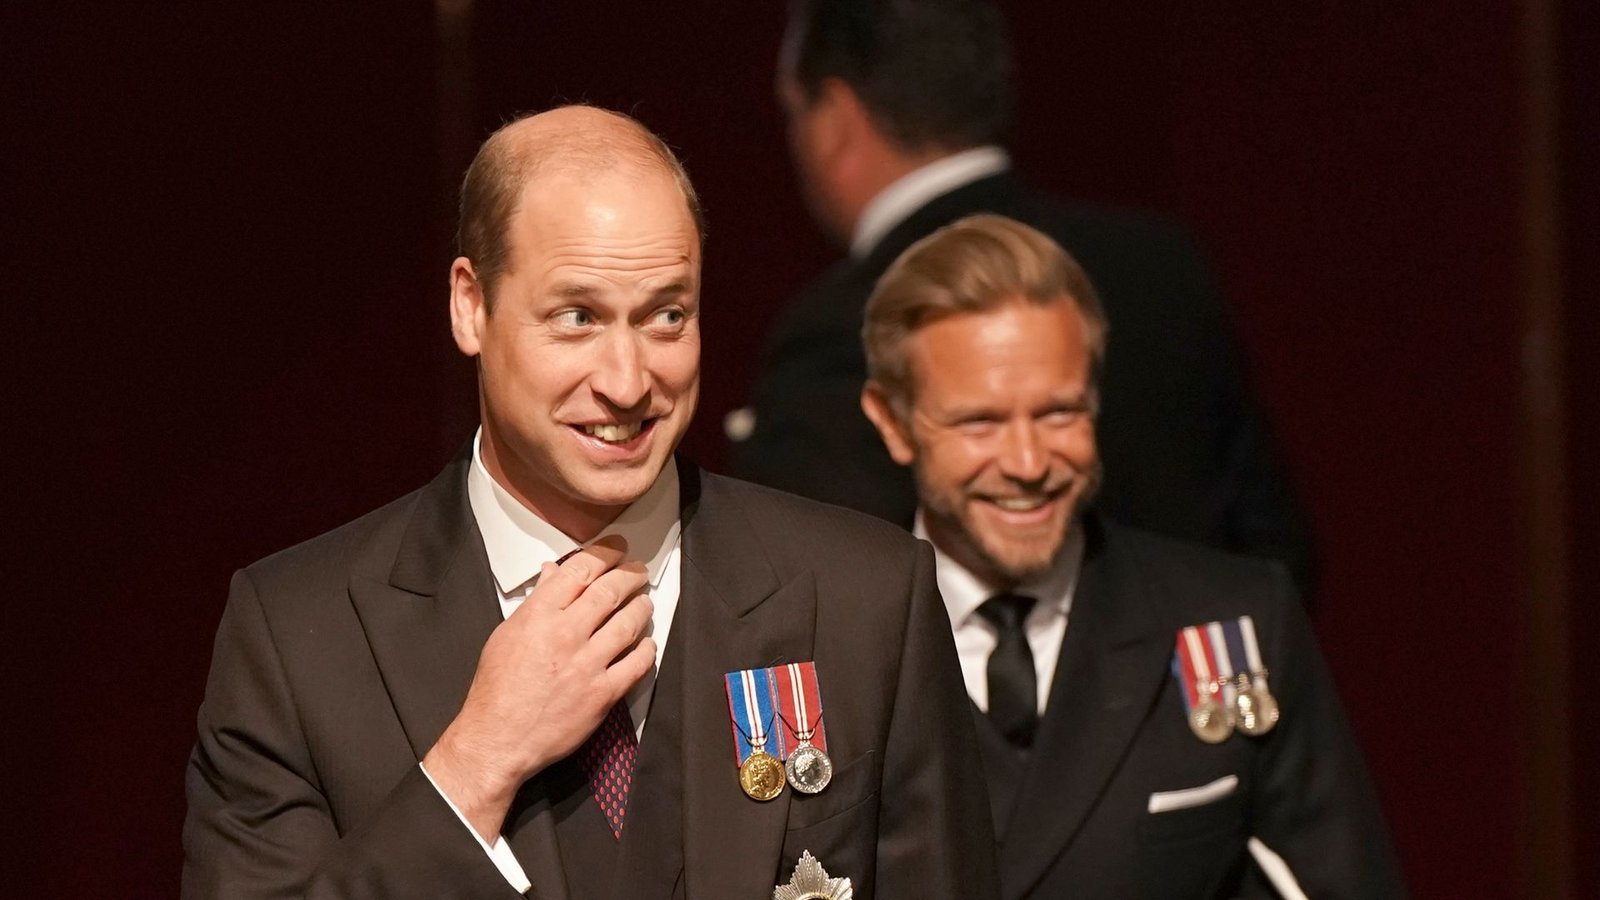 "Bedeutender Moment für zwei zukünftige Könige": Prinz William hatte bei der Parlamentseröffnung durch seinen Vater Spaß - Charles selbst hätte nach Einschätzung eines Experten lieber auf die Aufgabe verzichtet.Foto: Aaron Chown/PA Wire/dpa